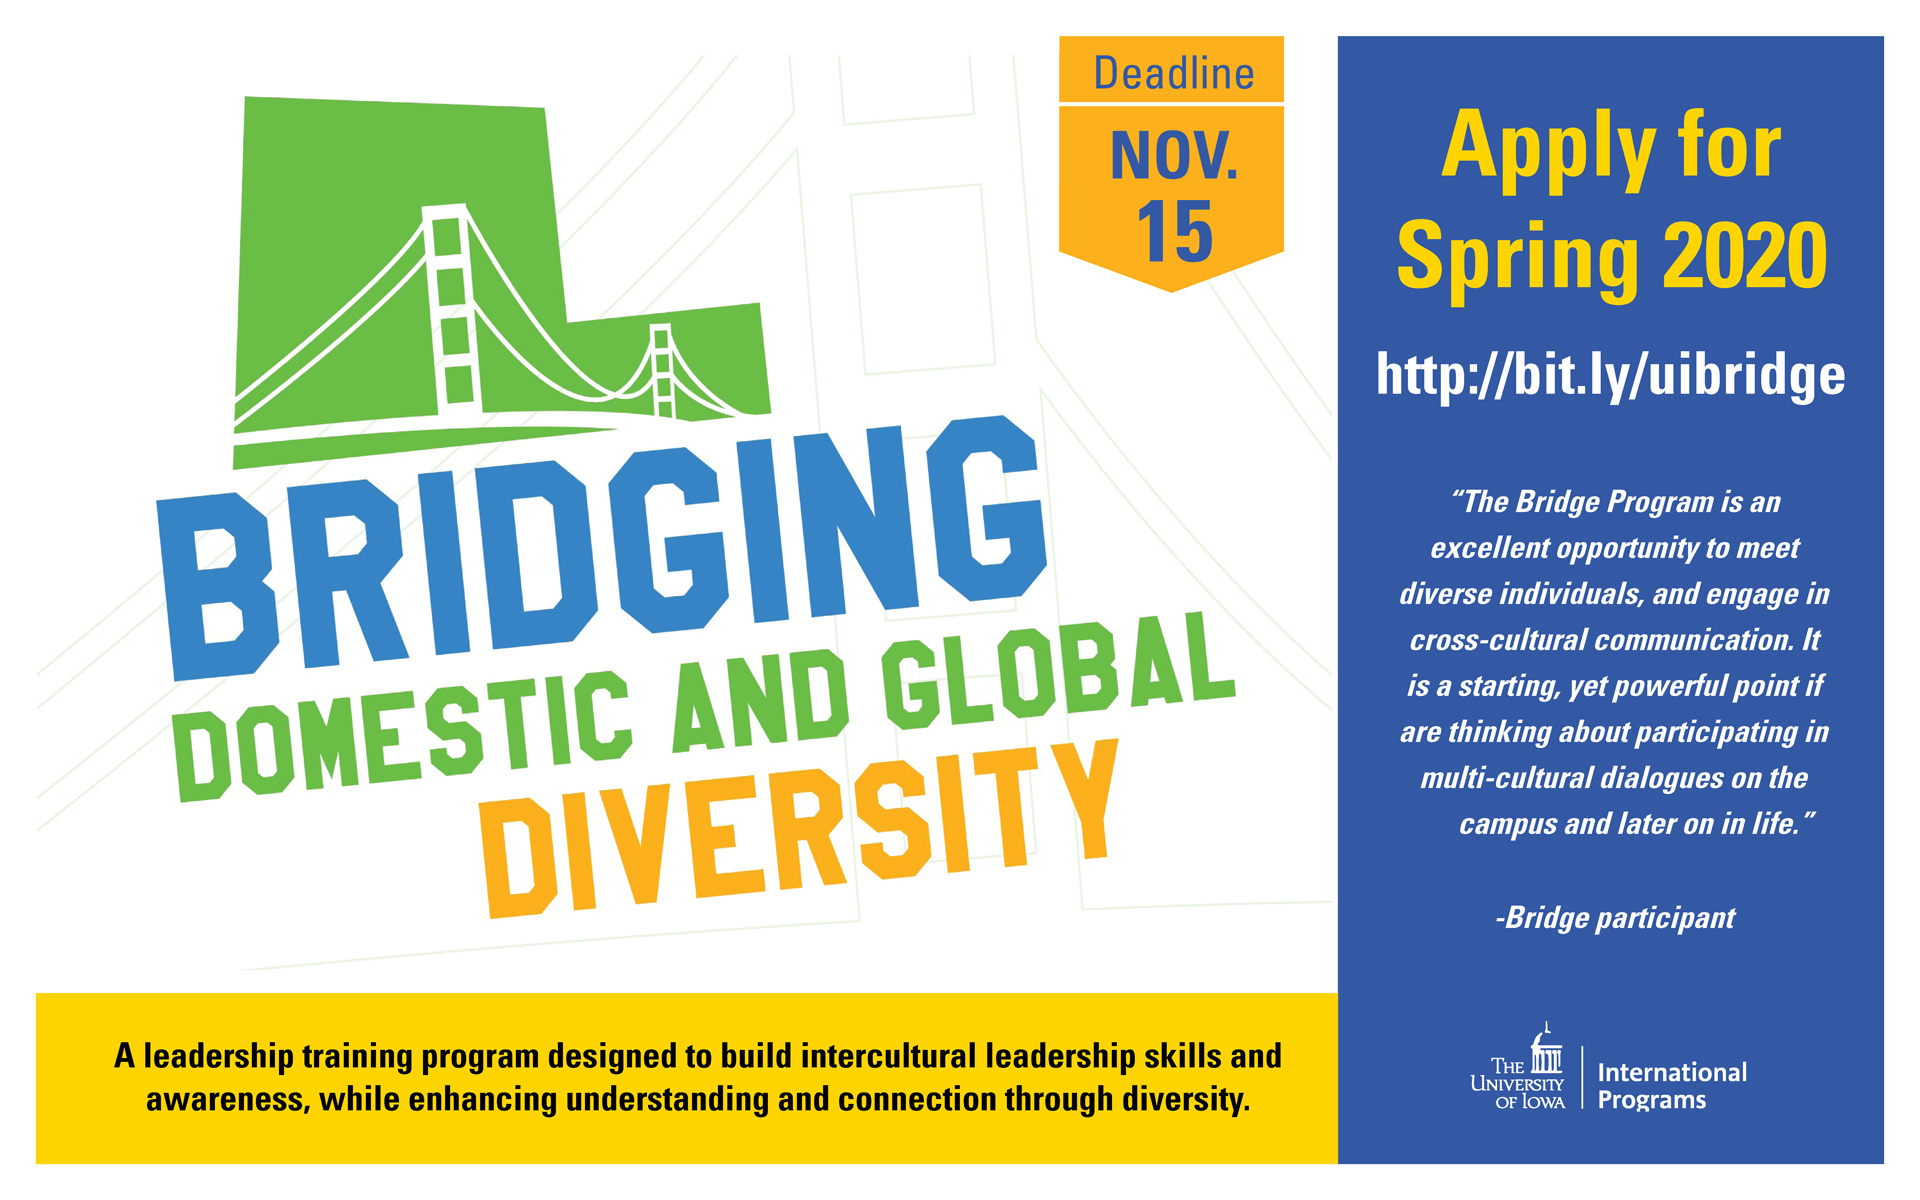 Bridging Diversity